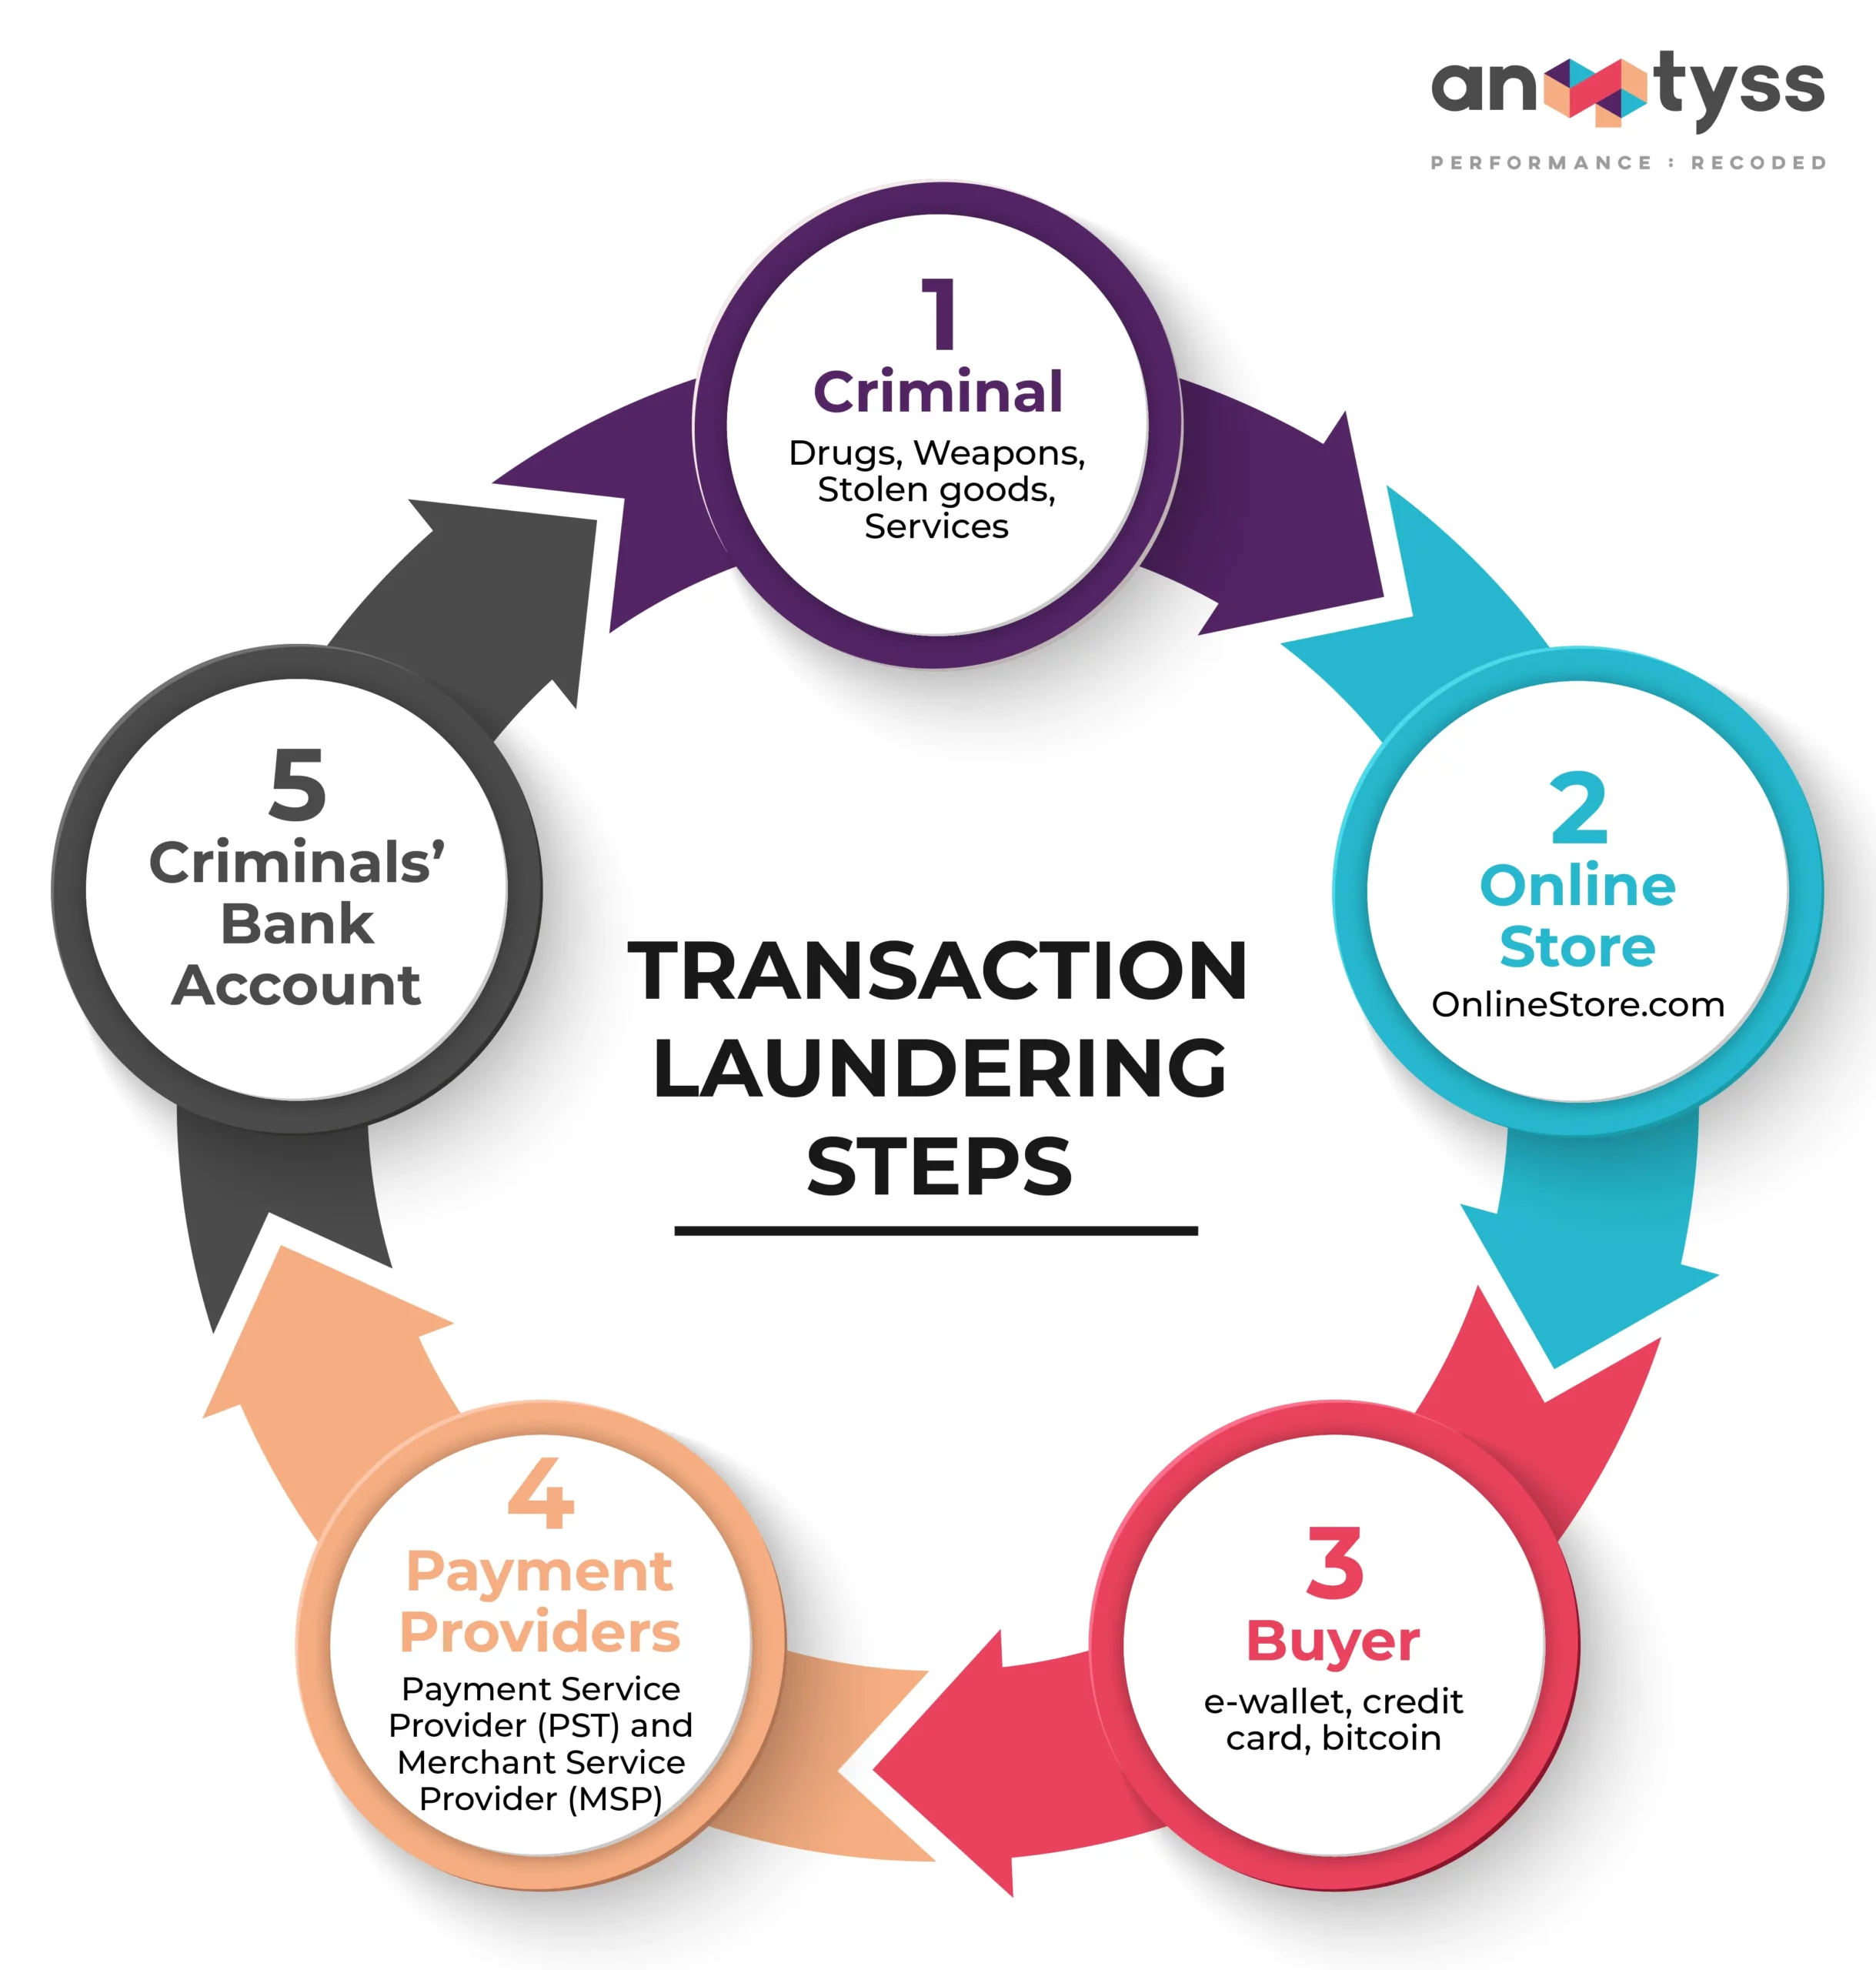 Transaction Laundering Steps